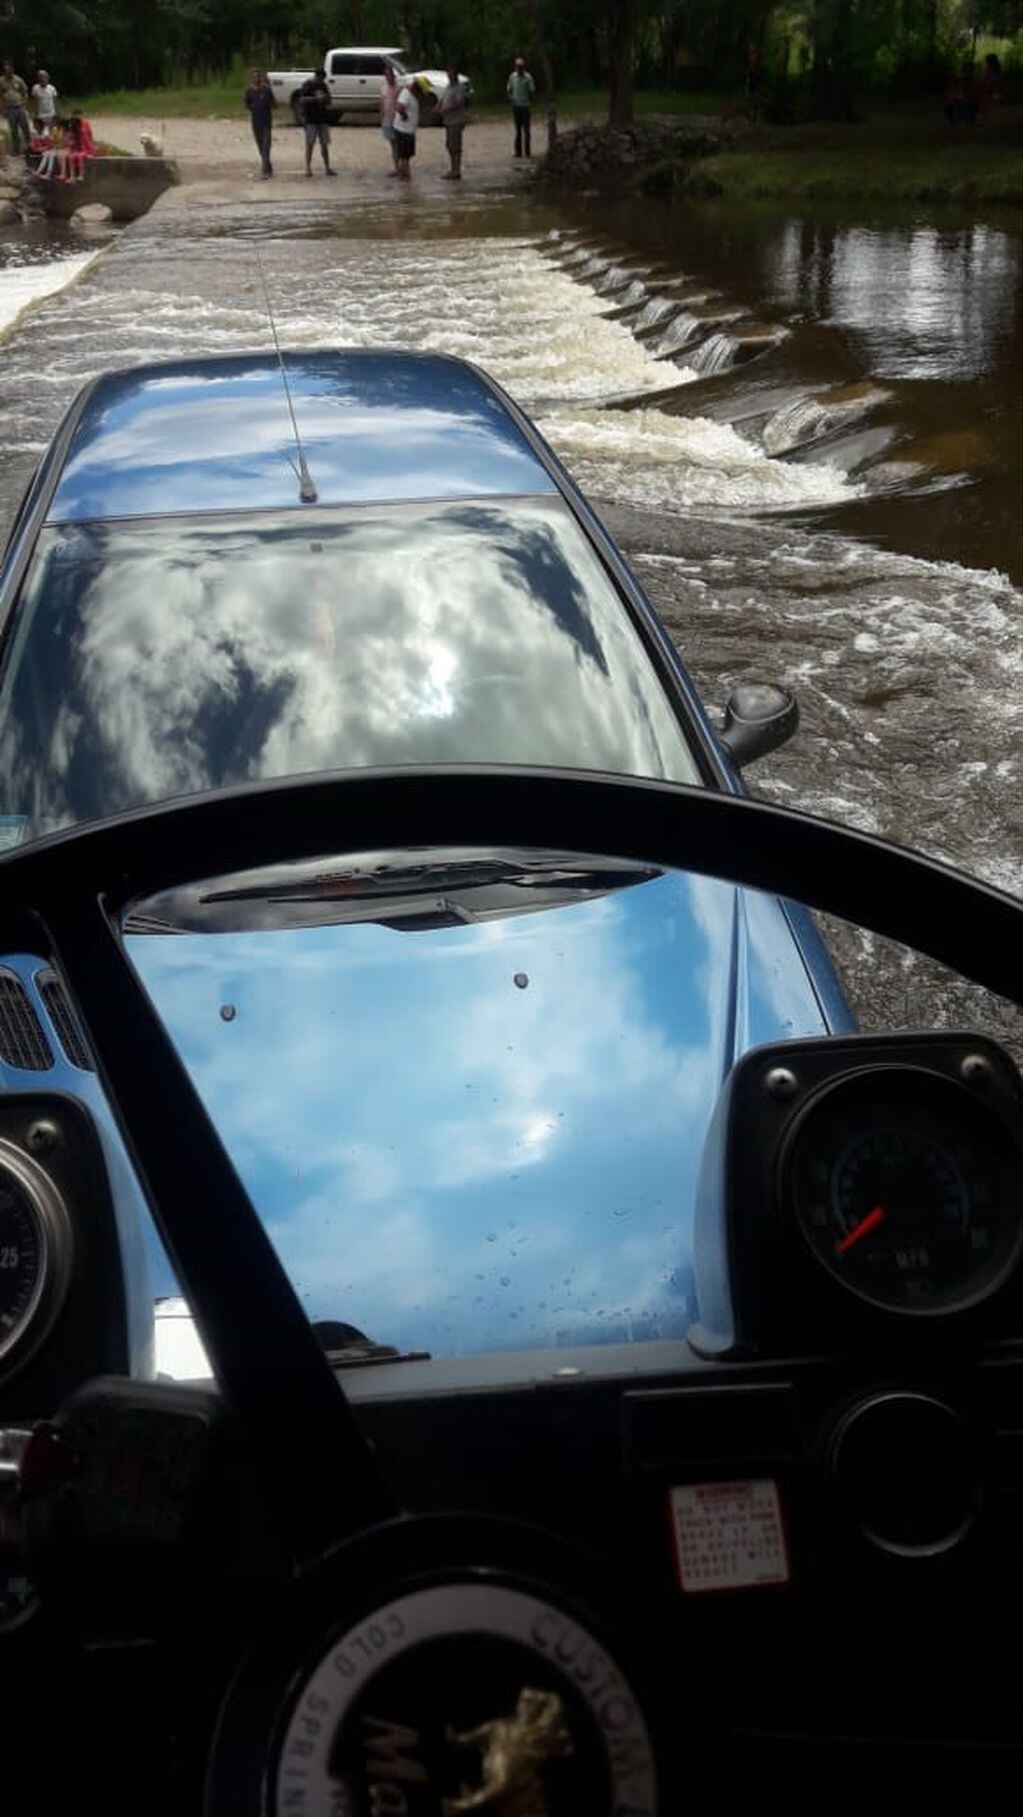 La mujer que conducía el Peugeot 206 quiso atravesar el vado pero la fuerza del agua arrastró al vehículo.